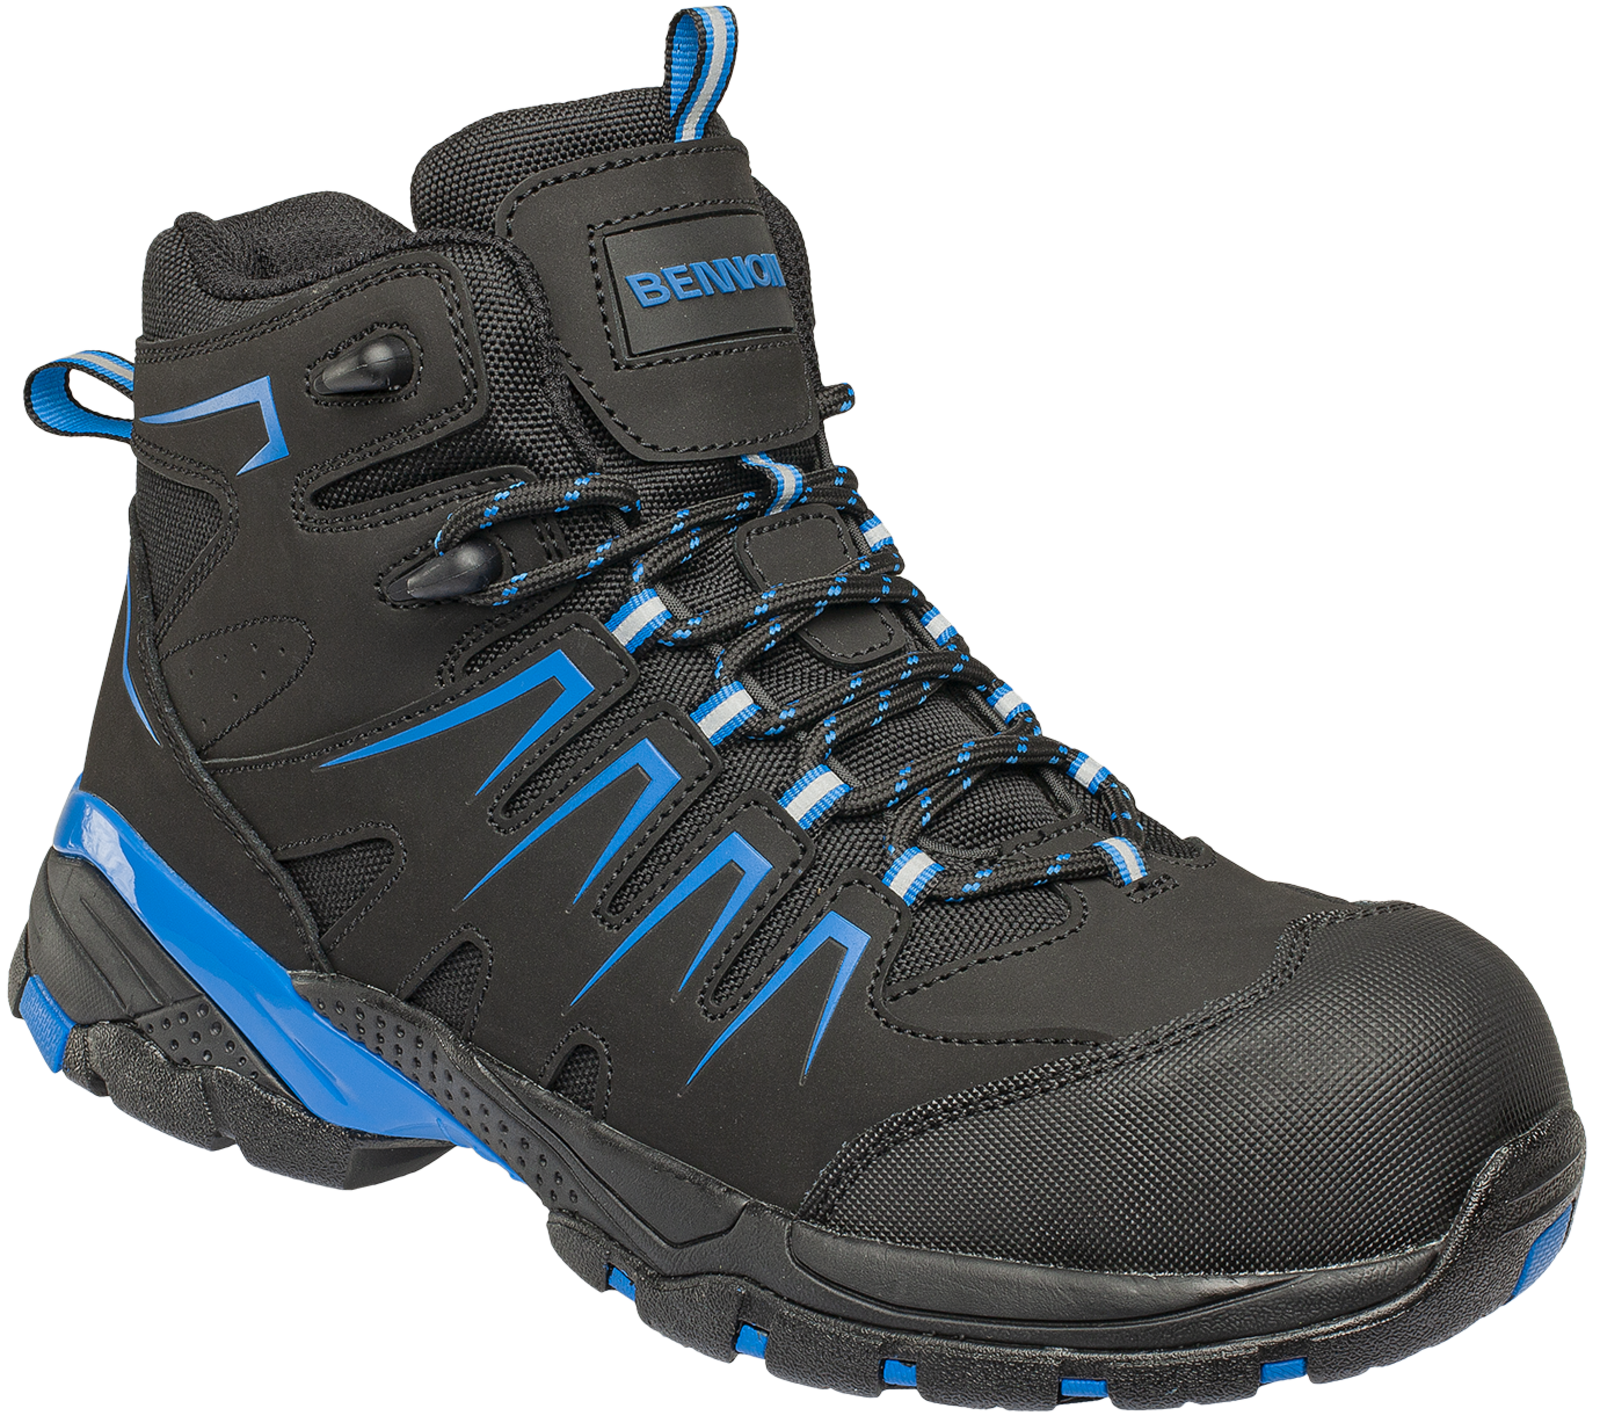 Bezpečnostná členková obuv Bennon Orlando XTR S3 NM High - veľkosť: 46, farba: čierna/modrá